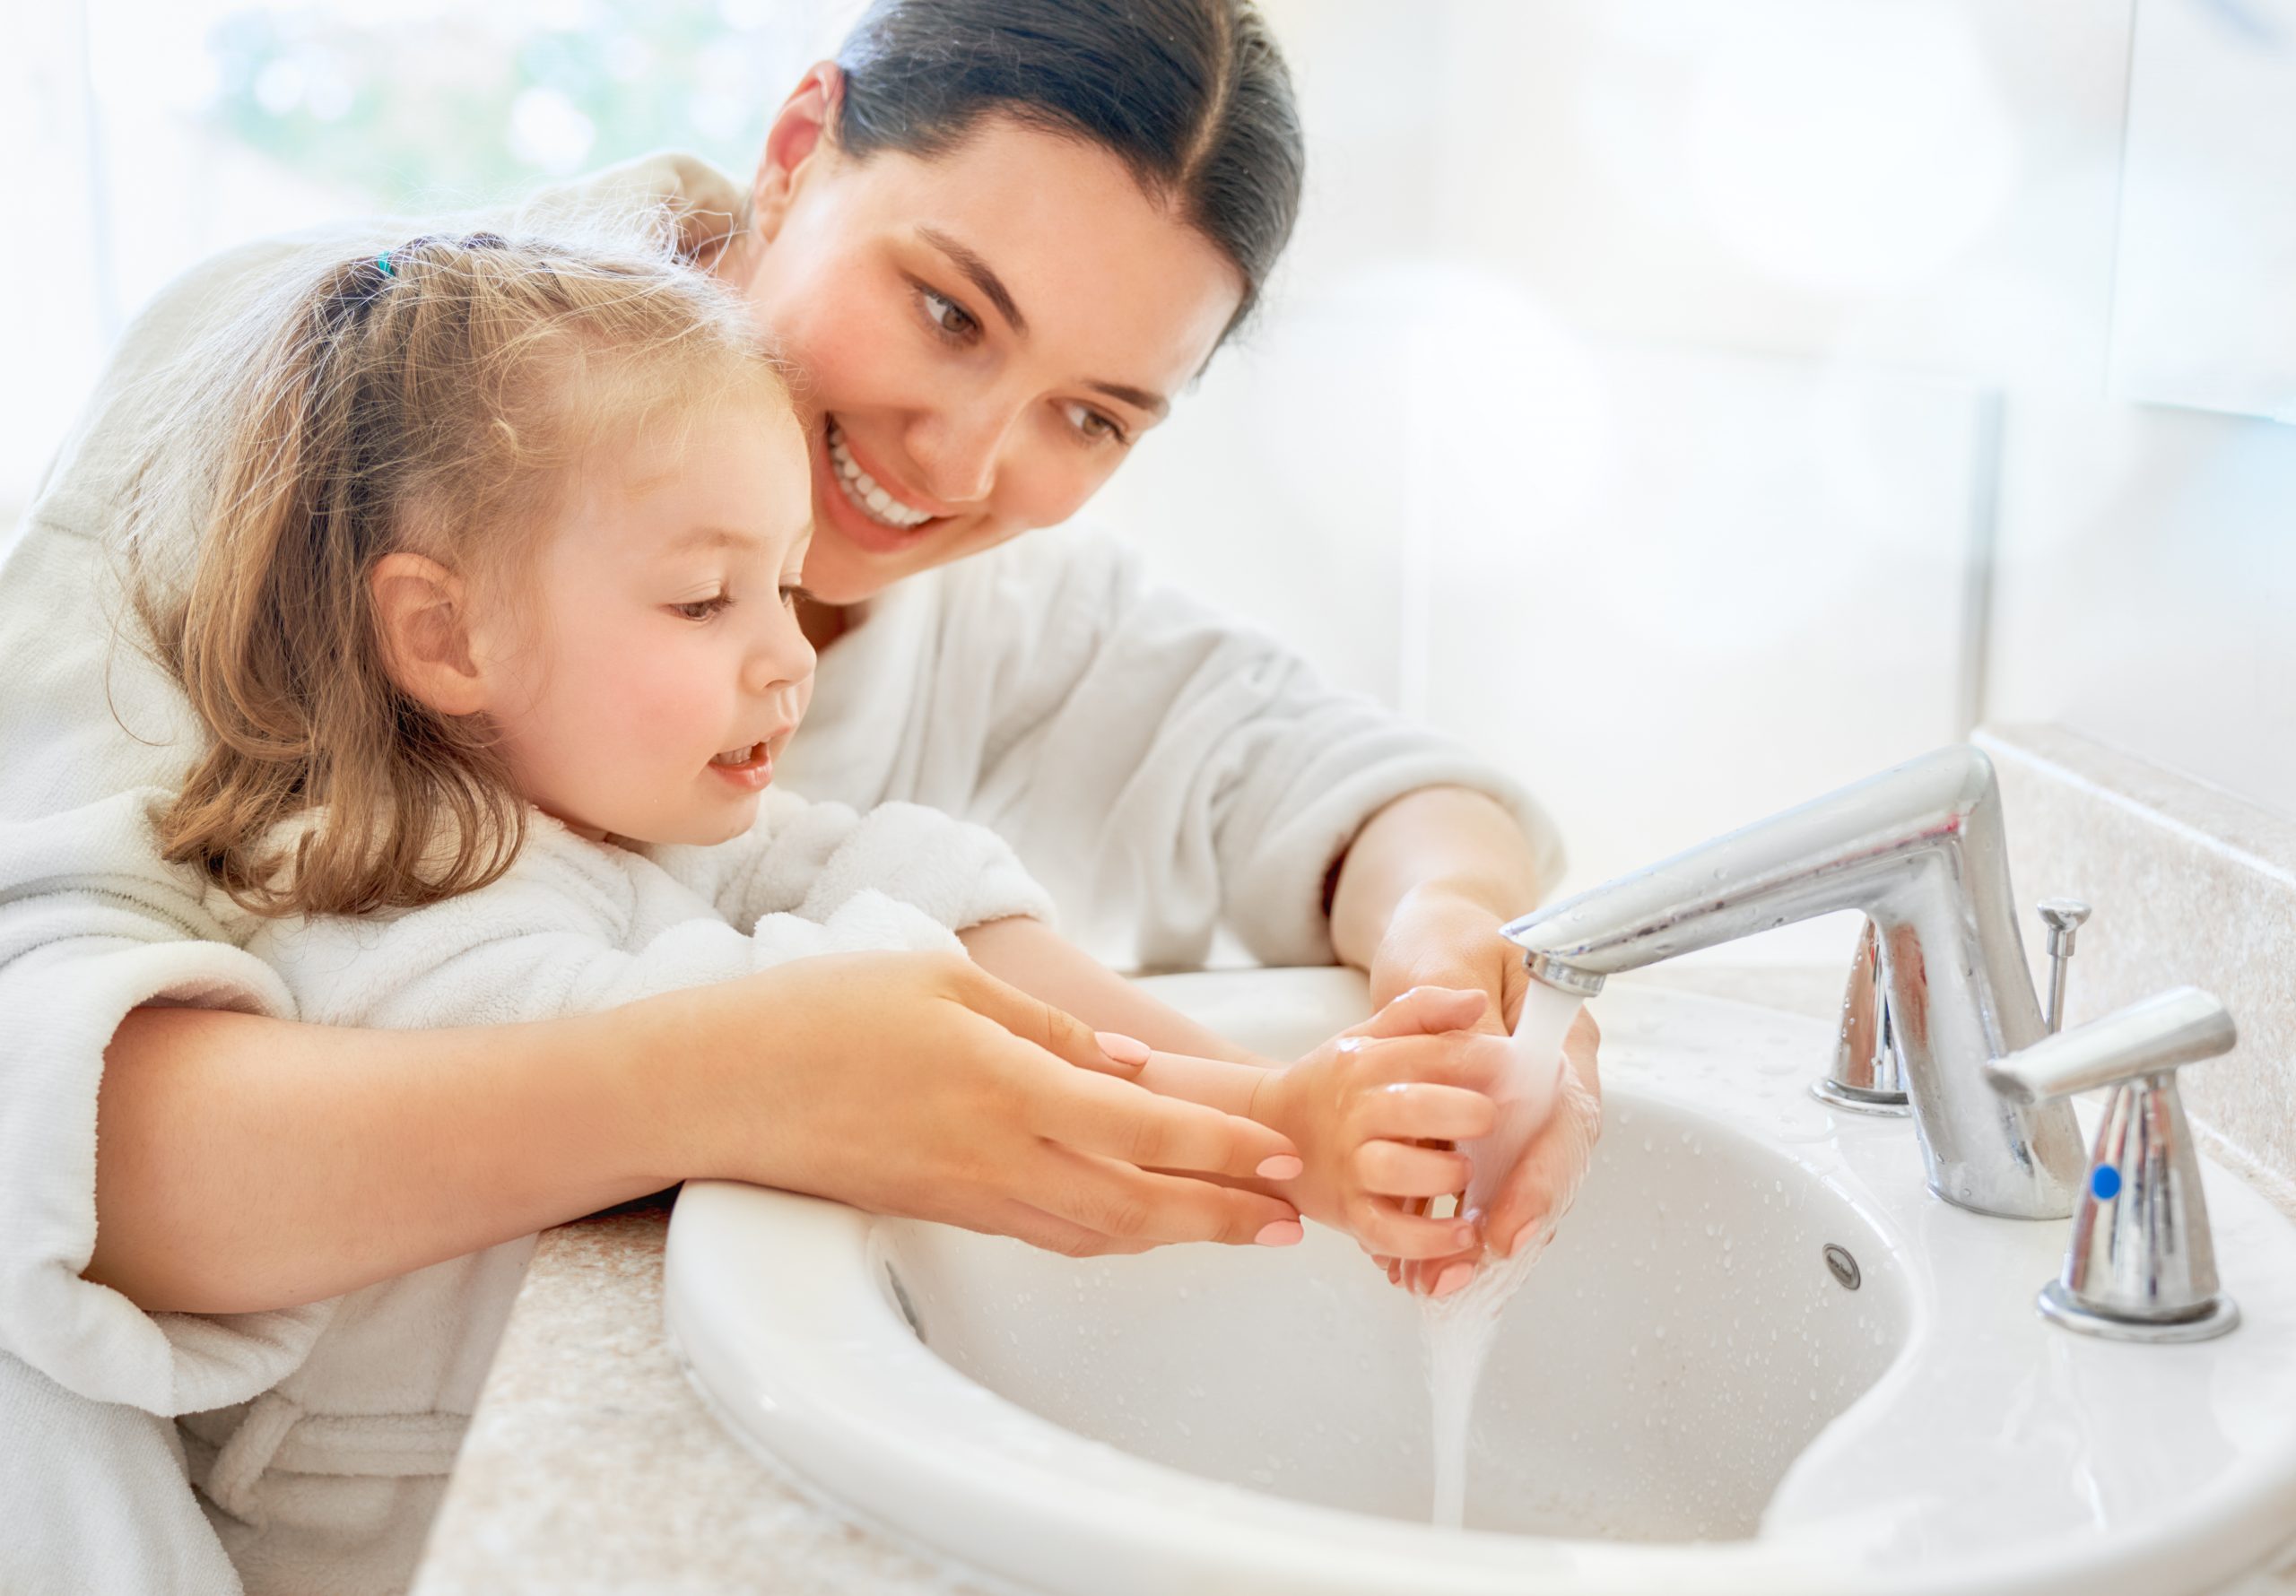 Światowy Dzień Mycia Rąk 7 Ciekawostek O Mydle I Zarazkach Magazyn Dzieci 2781